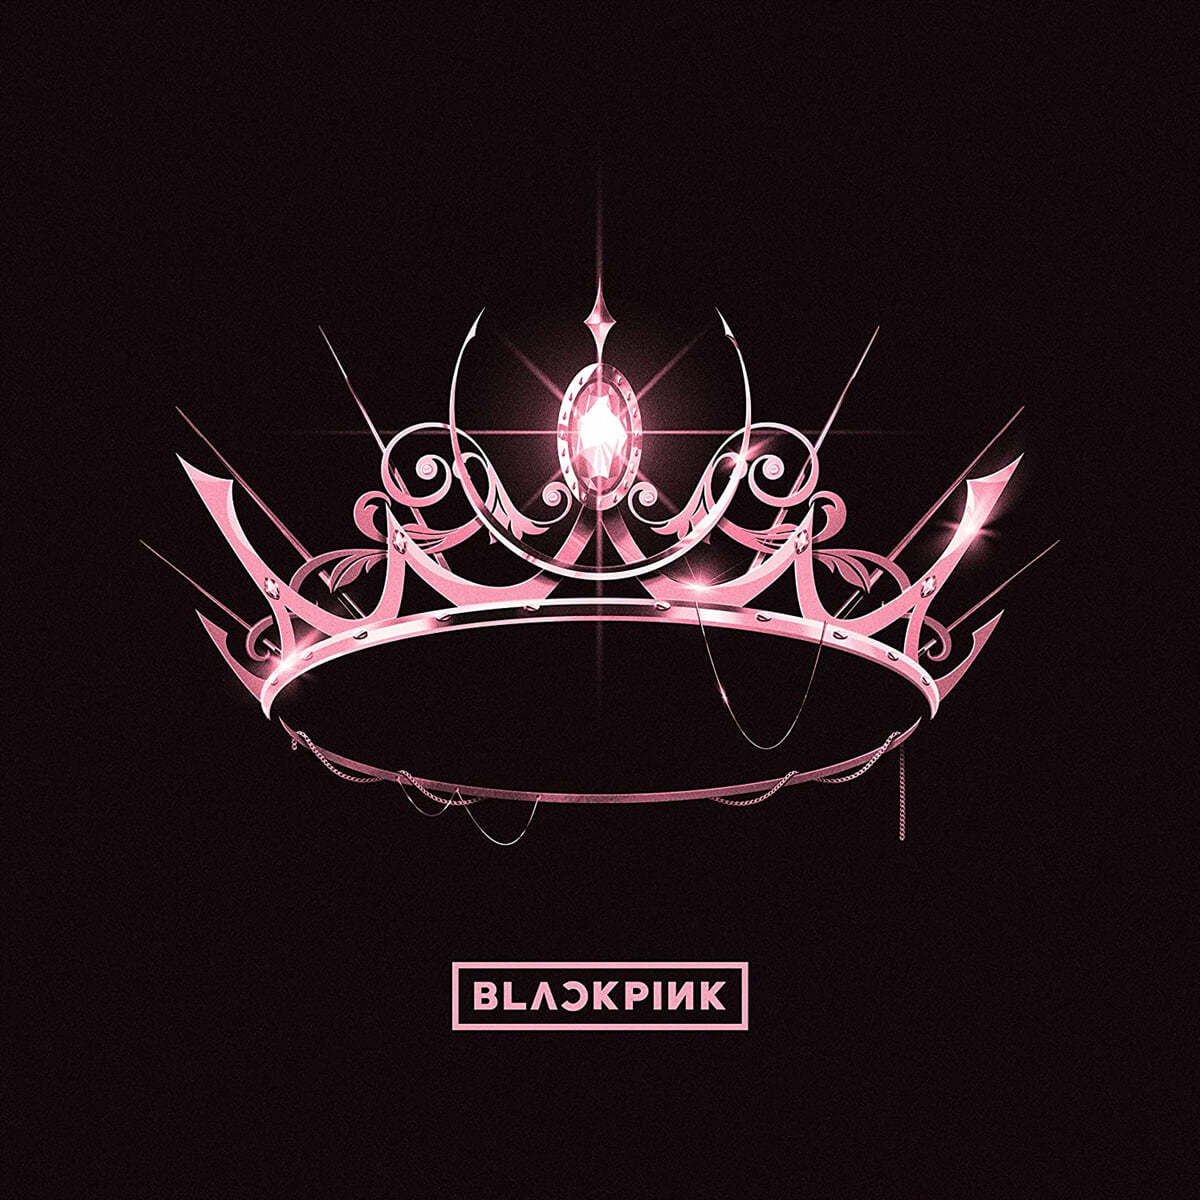 블랙핑크 (BLACKPINK) - BLACKPINK 1st VINYL LP [THE ALBUM] [핑크 컬러 LP] 